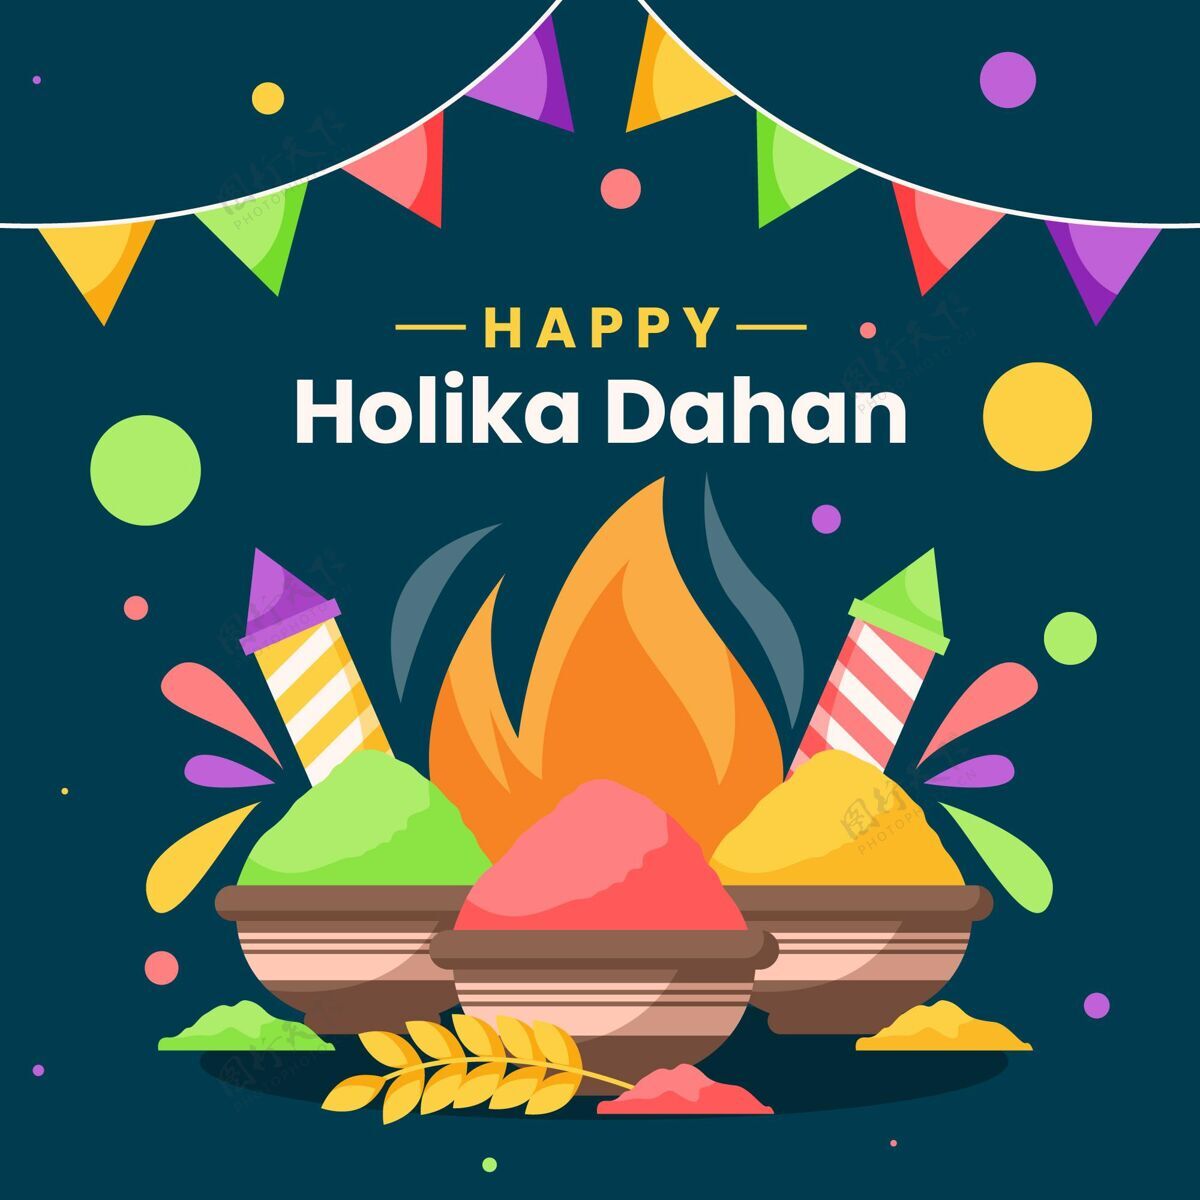 问候语带有篝火和花环的Holikadahan插图印度庆祝插图